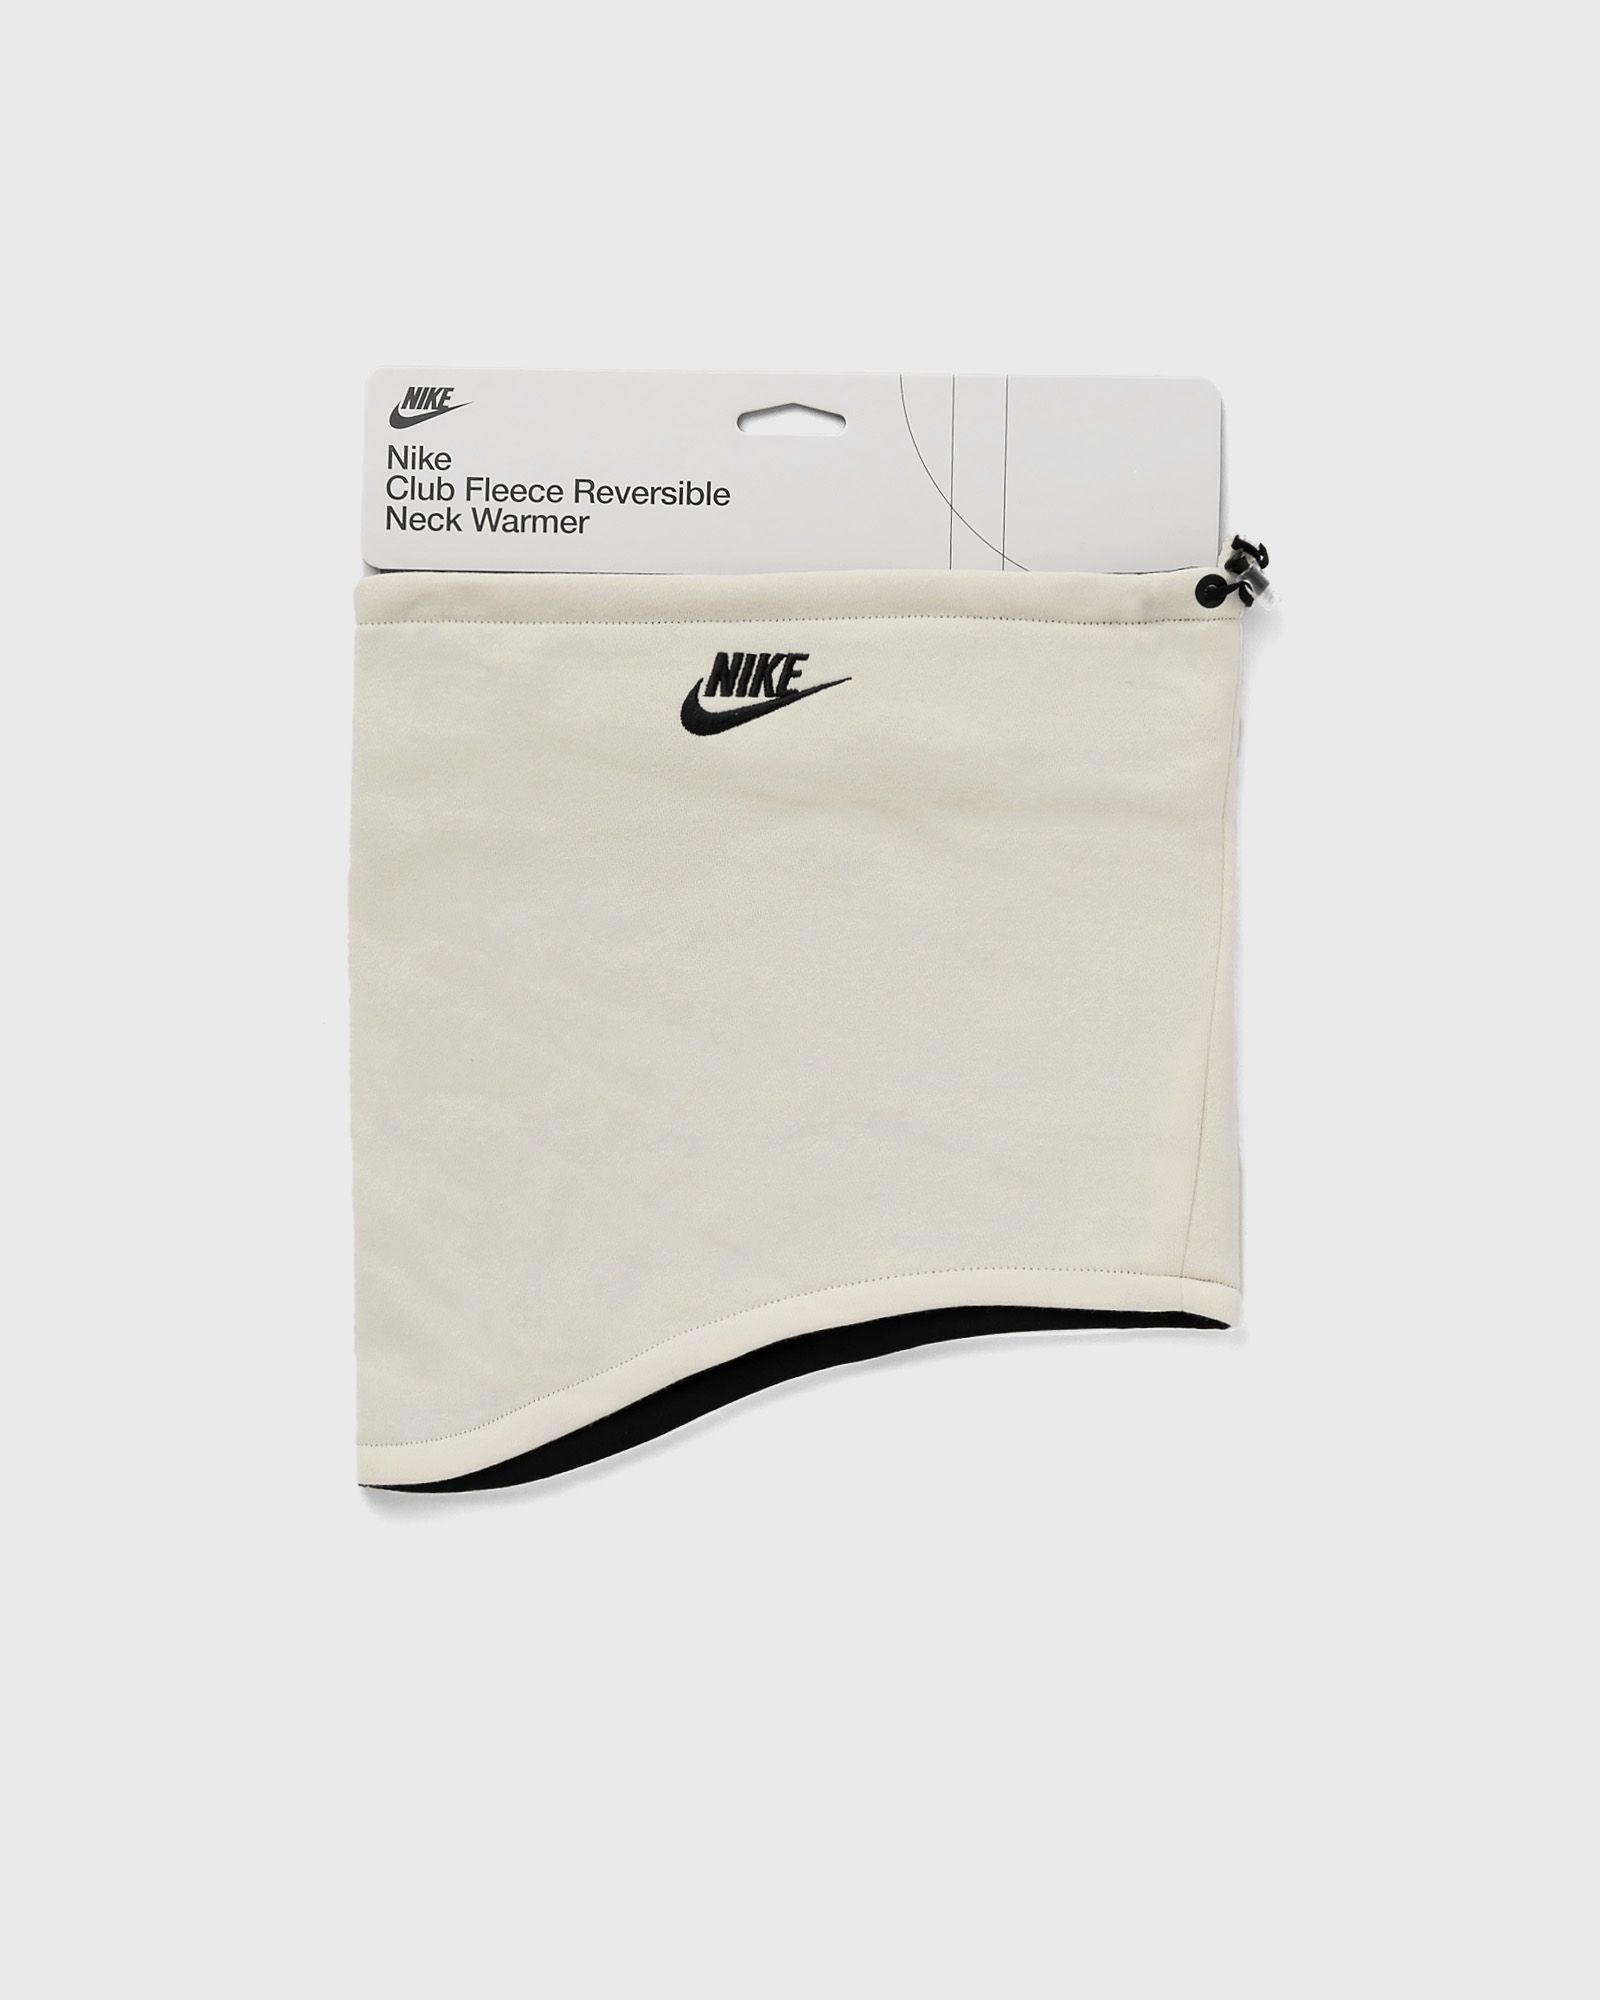 Nike - neckwarmer reversible club fleece men scarves white in größe:one size